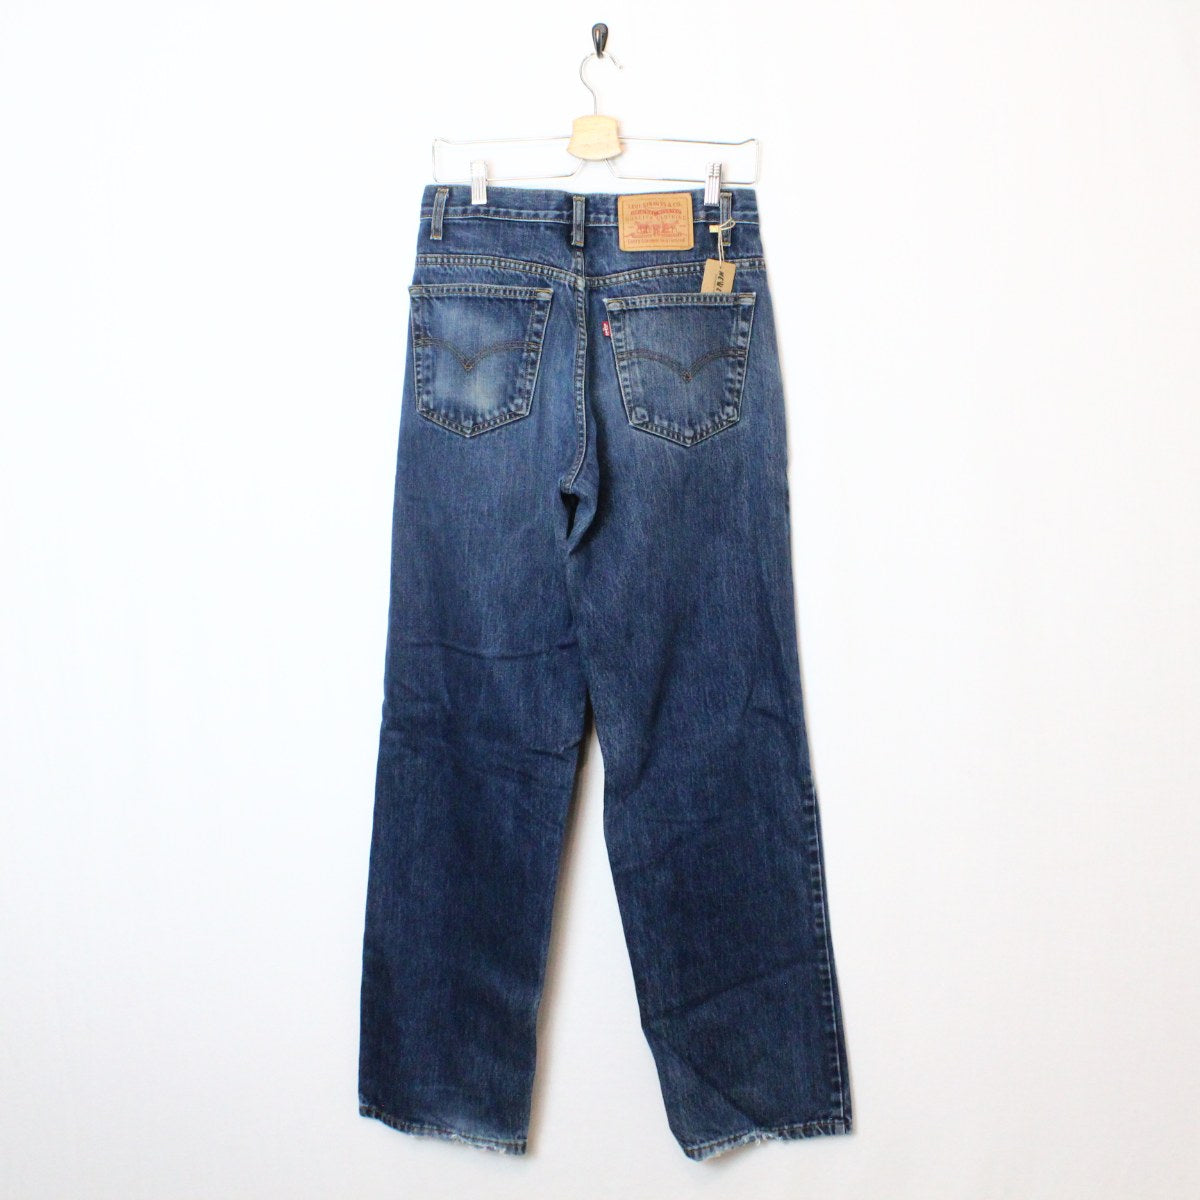 Vintage Levi's 535 Denim Jeans - 32